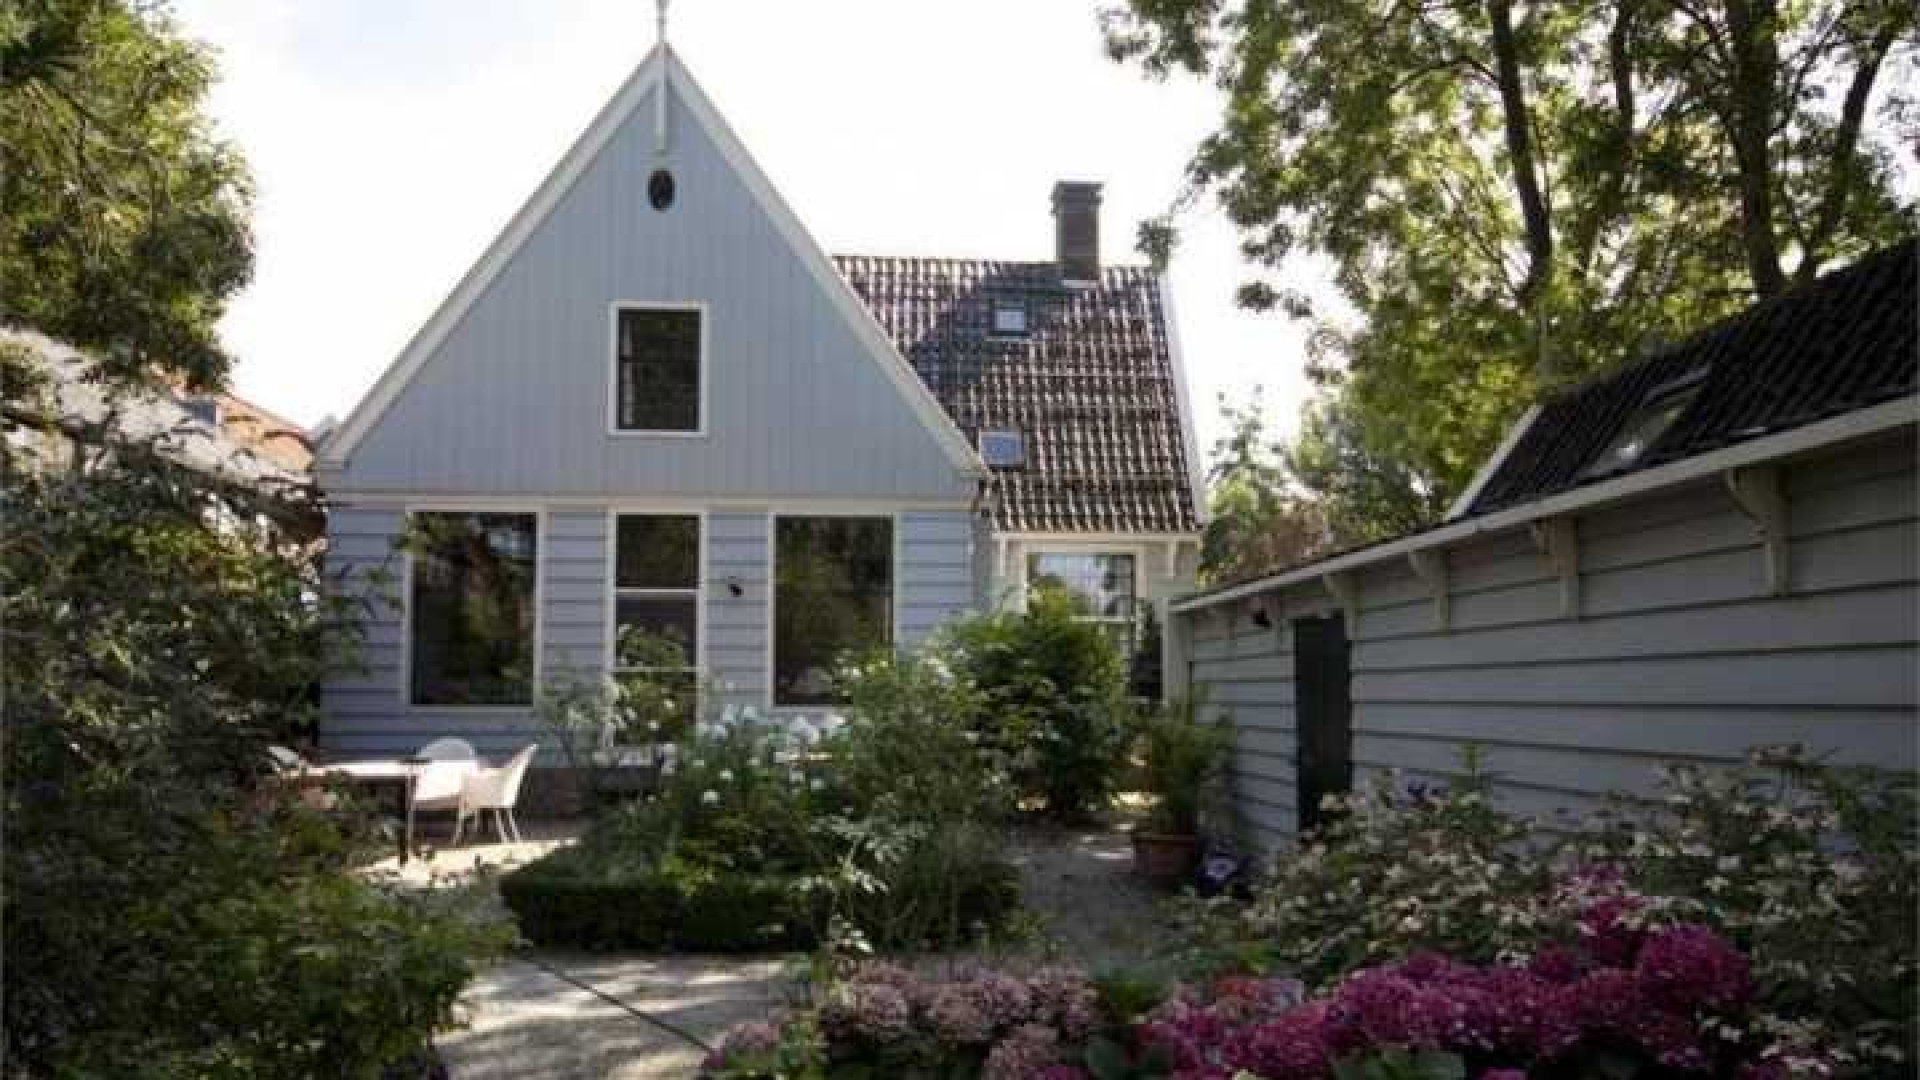 Wilbert Gieske verruilt Amsterdam voor prachtig huurhuis in Broek in Waterland. Zie foto's 1